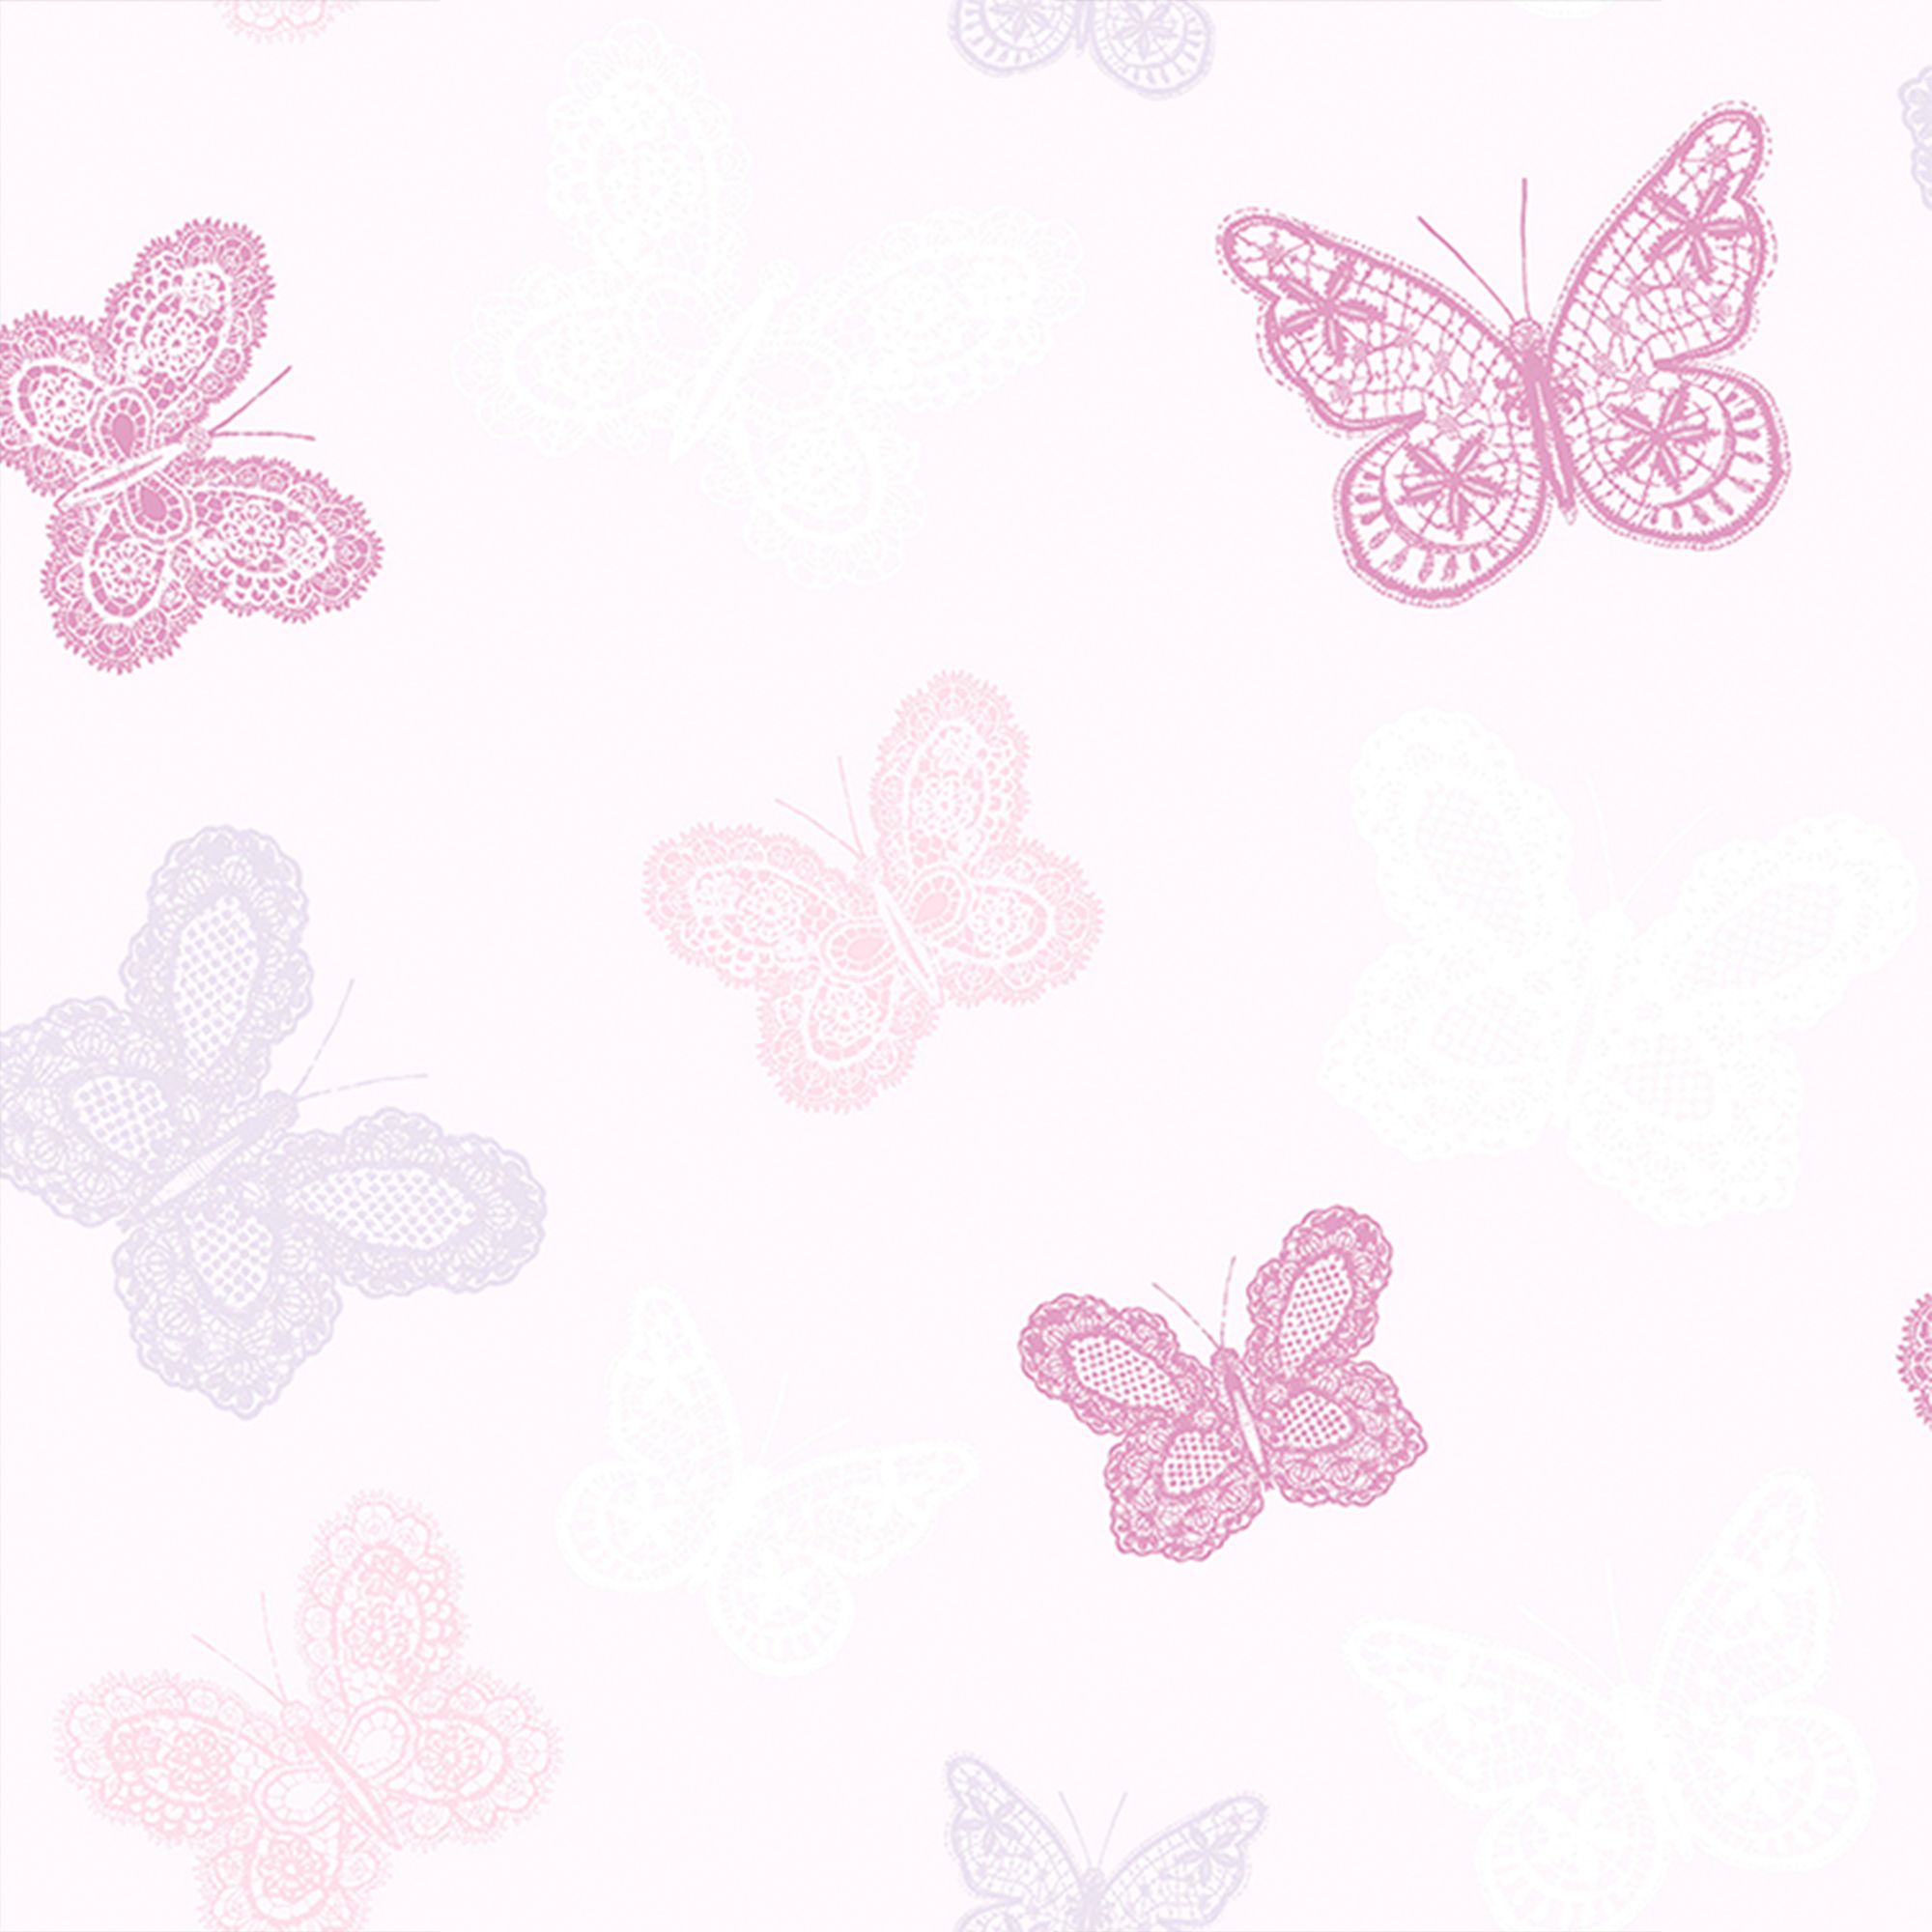 hot pink butterfly wallpaper